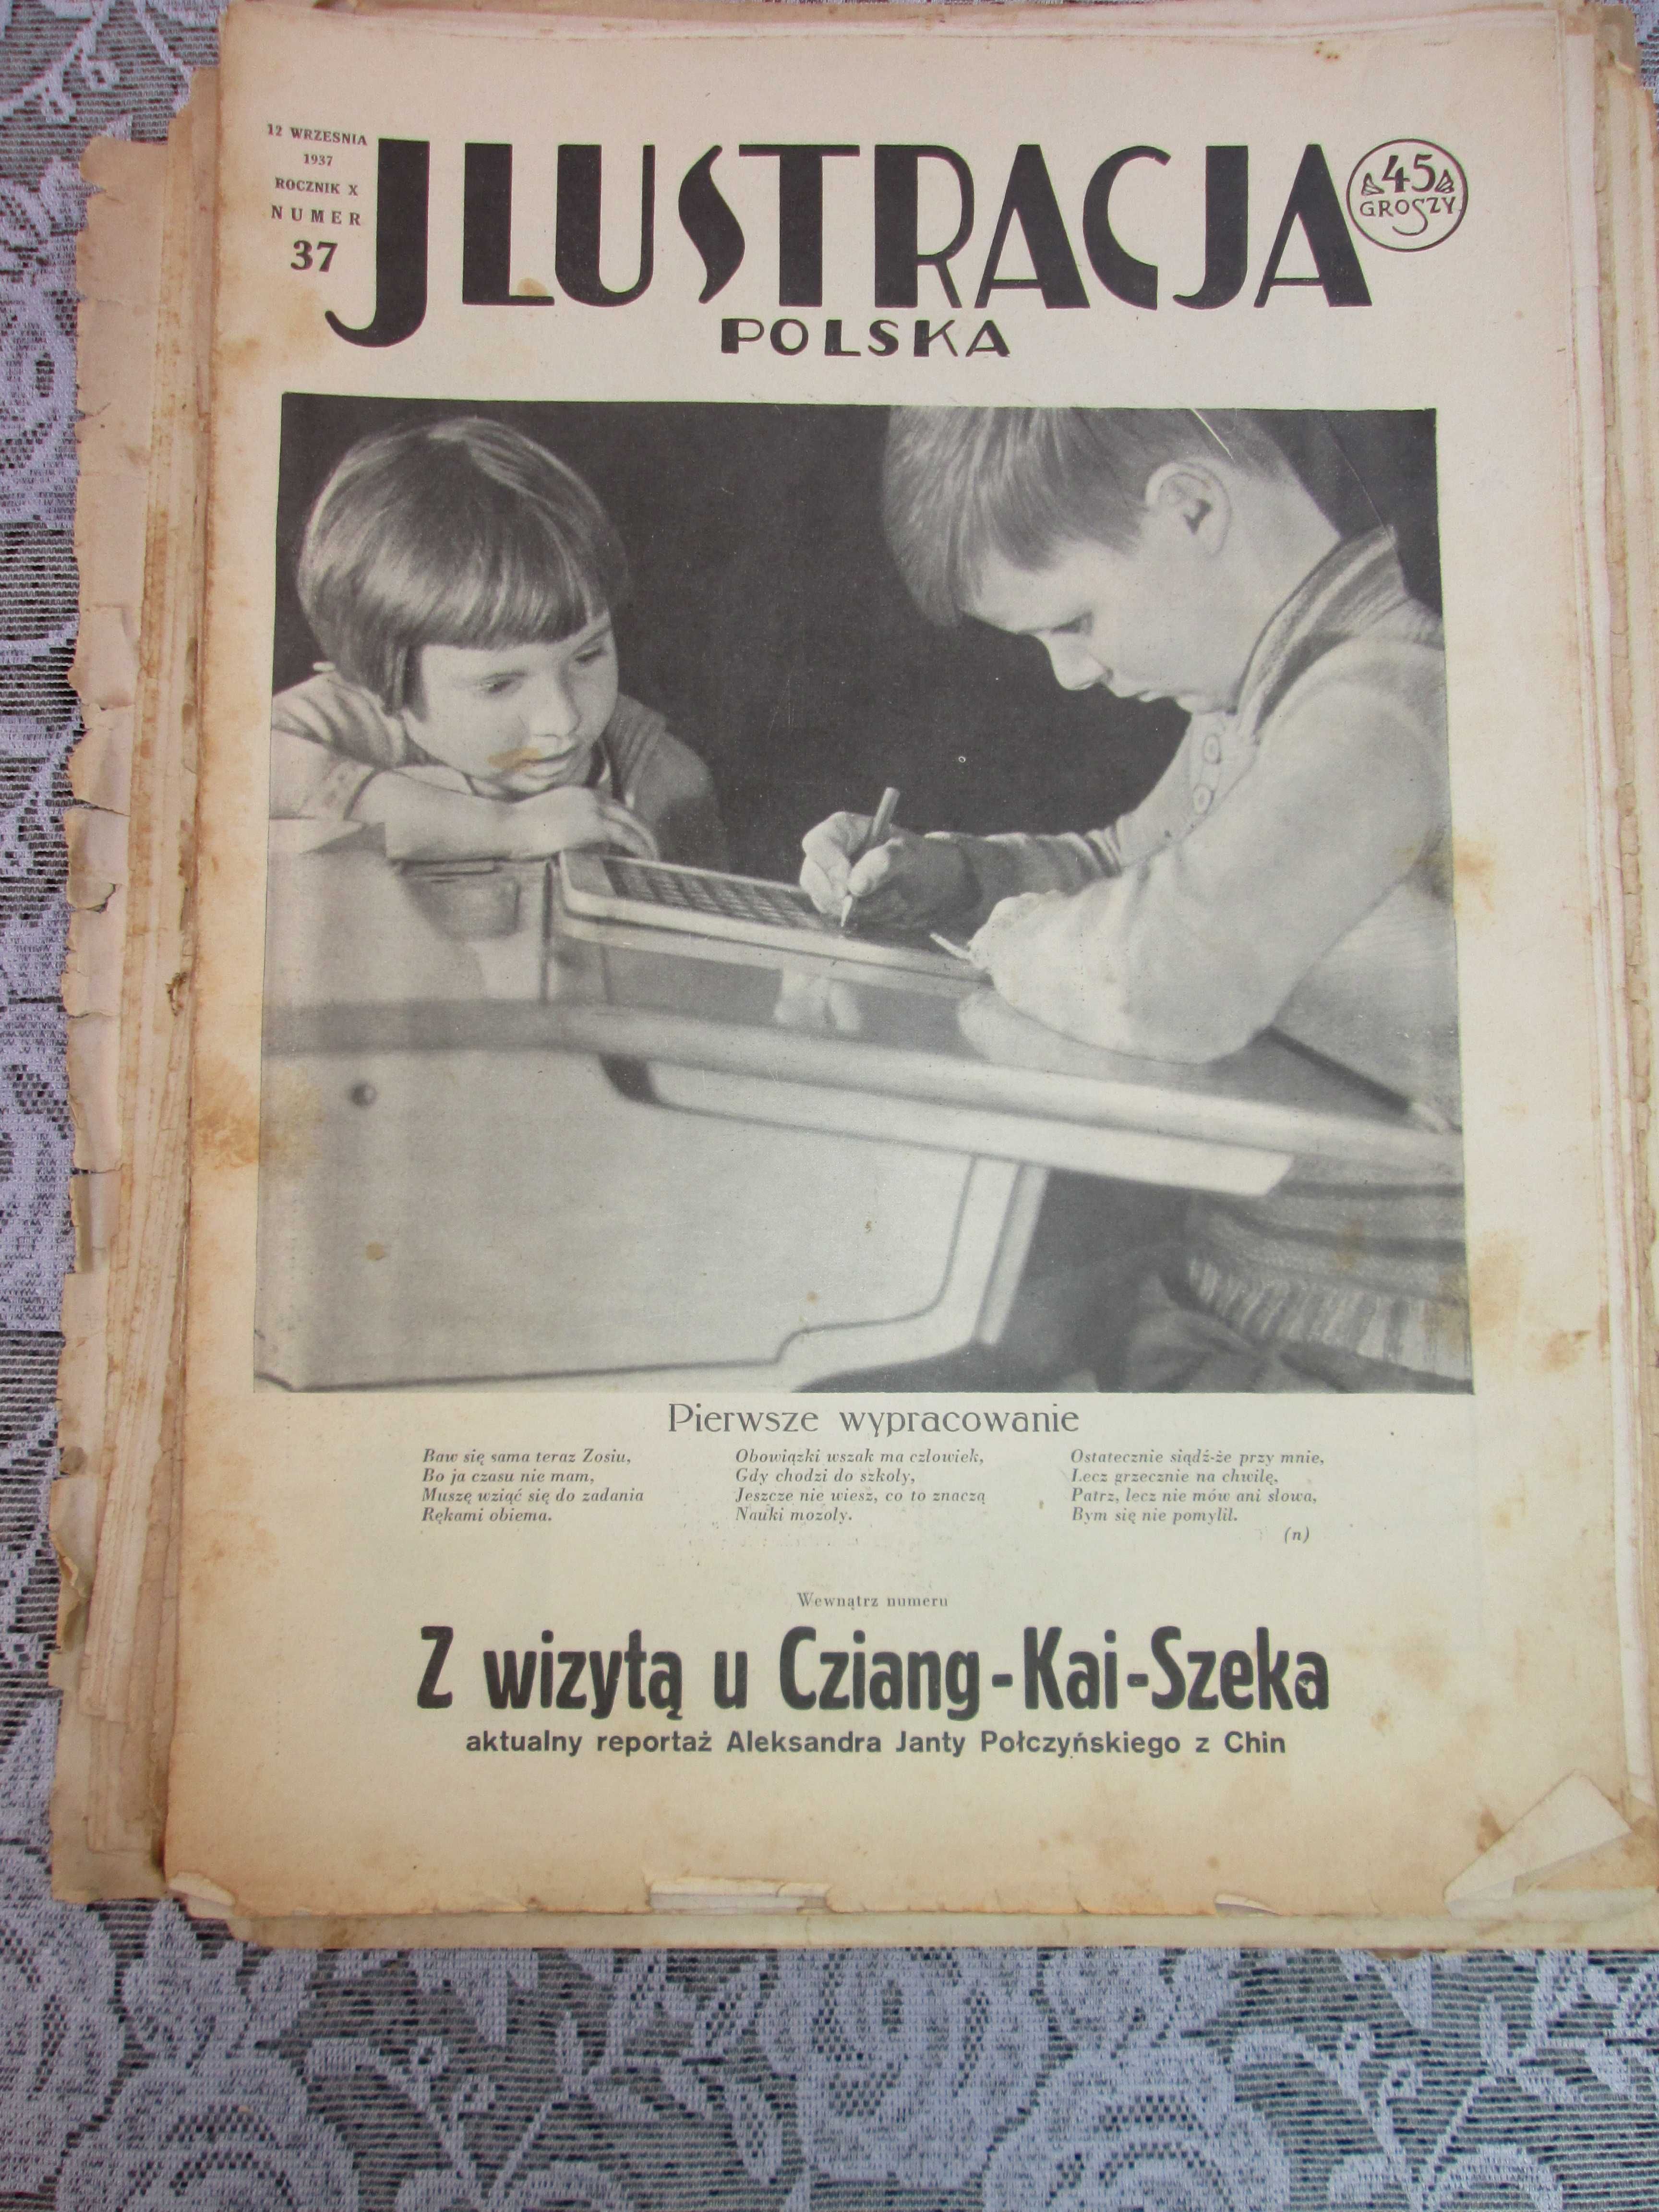 Gazeta czasopismo ILUSTRACJA 1934 rok Drukarnia Poznań Unikaty 50 szt